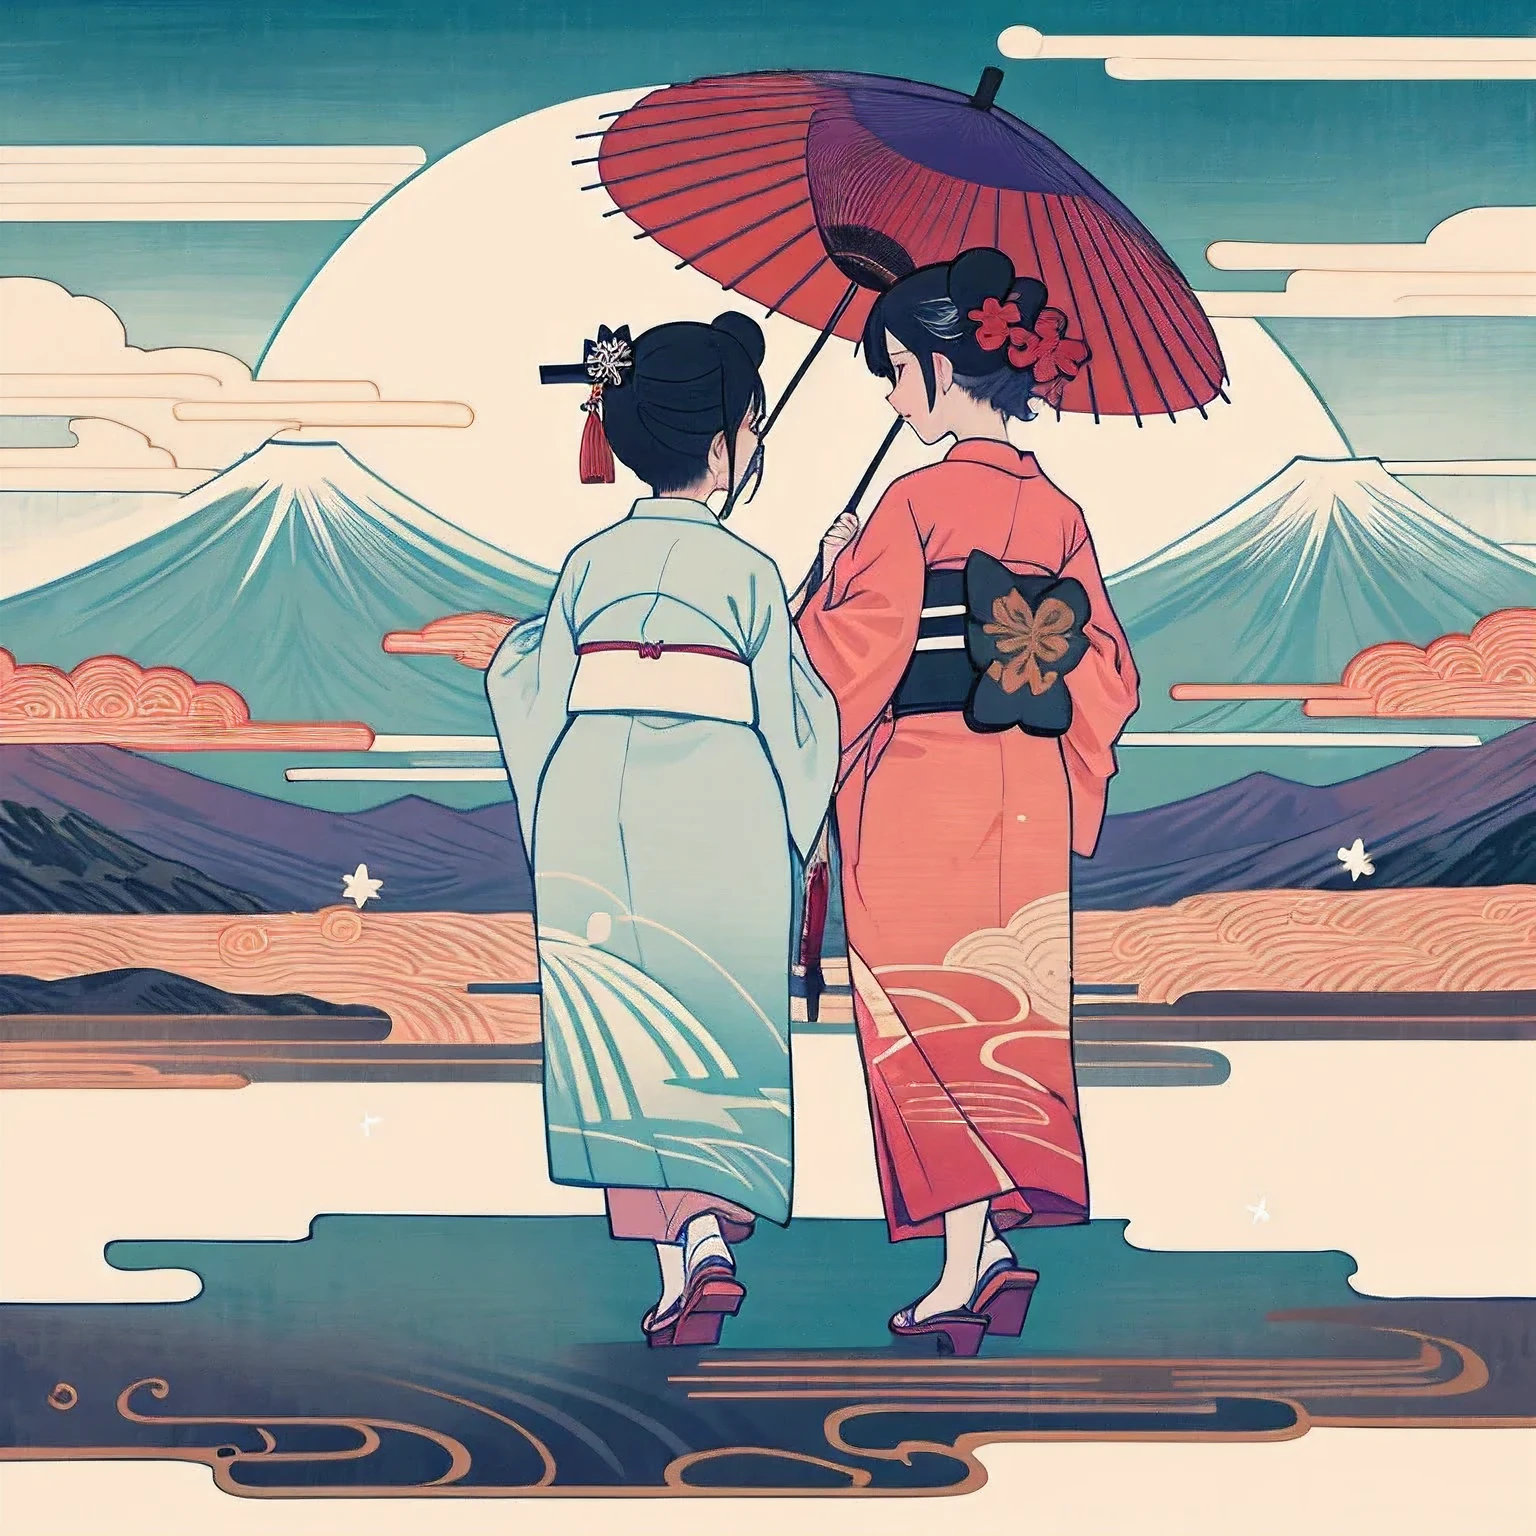 Maiko de Kioto, dos personas, Usando un kimono, dos personas並んで立って歩いている, dos personas, ambas mujeres, cara blanqueada, vista trasera, Ver en 1, Ángulo de cuerpo completo, Usar geta, Caminando con un paraguas japonés, Quimono morado y blanco.＆Usar un kimono rojo y blanco, El gran Monte Fuji está al fondo.., Ambiente chispeante y fantástico.